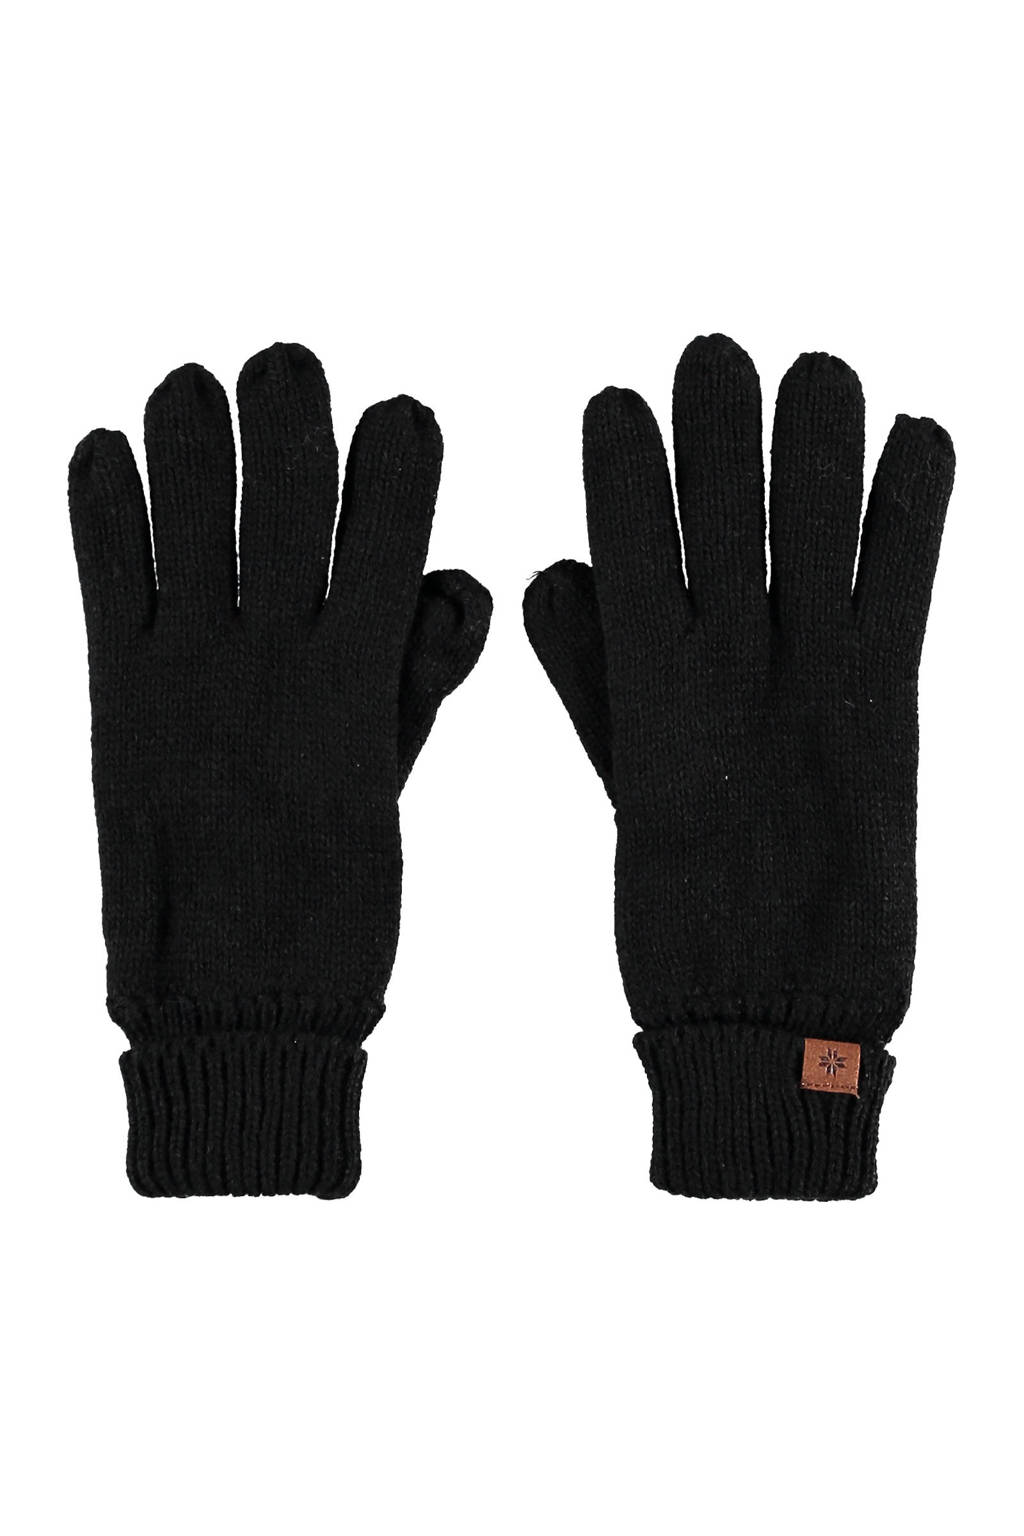 Sarlini handschoenen zwart, Zwart